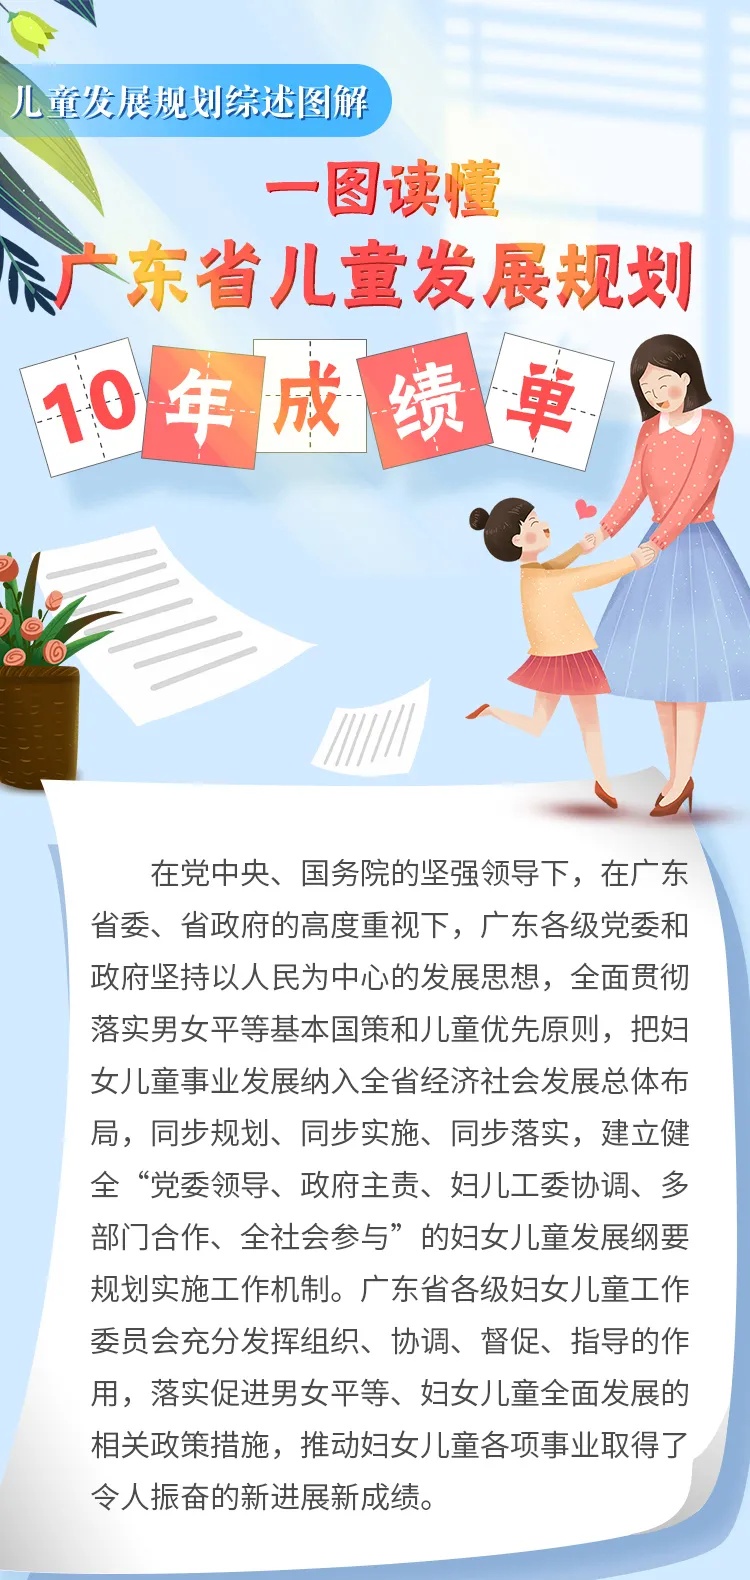 亮眼！广东晒出儿童发展规划十年“成绩单”，幸福感倍增！